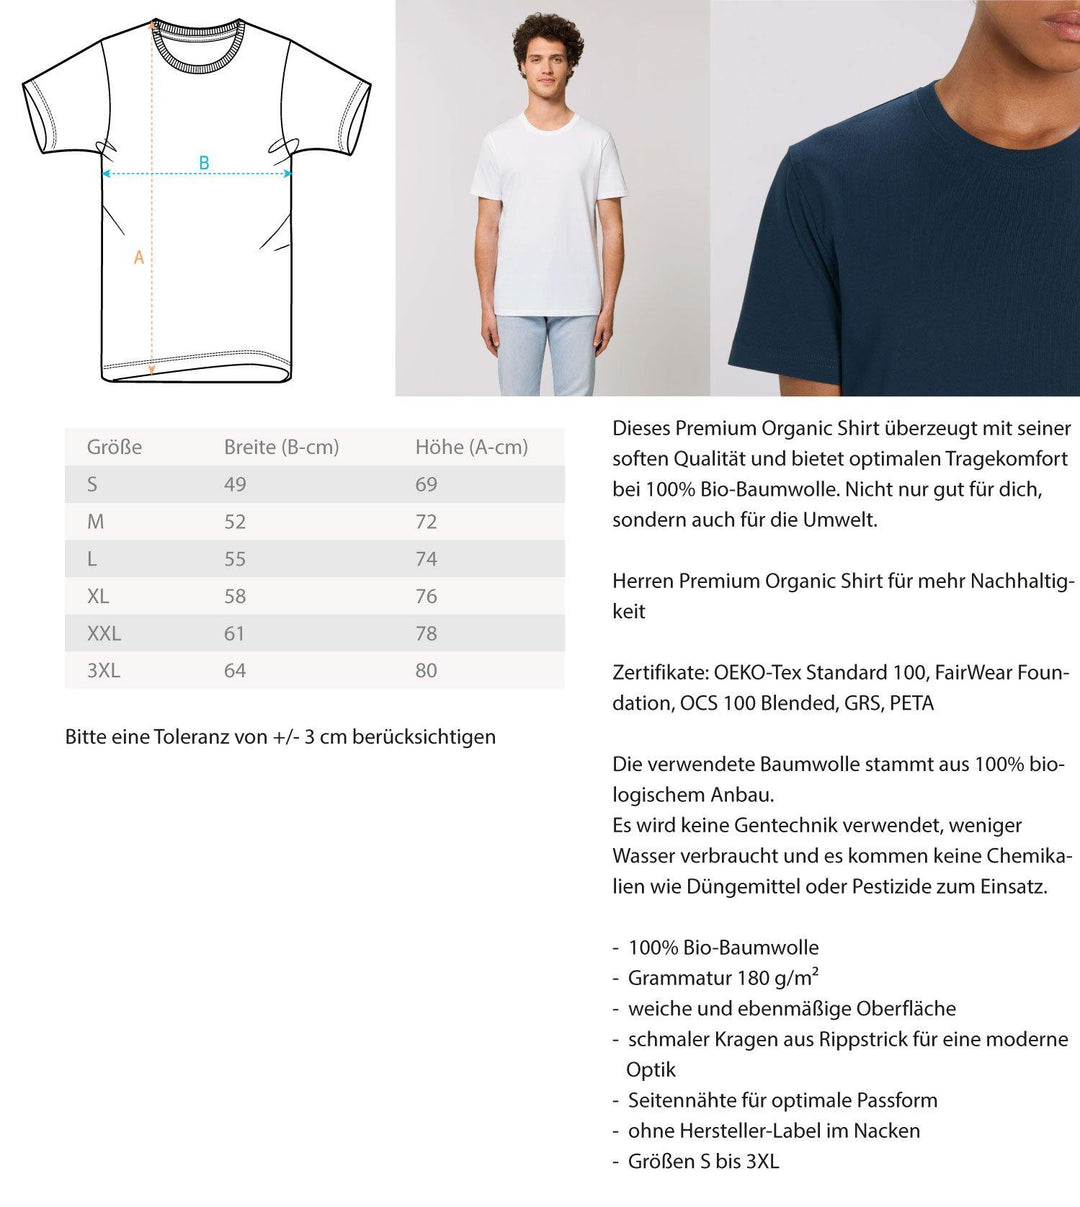 Hokus Pokus Mittelfinger Modus  - Herren Premium Organic Shirt - Words on Shirts Sag es mit dem Mittelfinger Shirts Hoodies Sweatshirt Taschen Gymsack Spruch Sprüche Statement